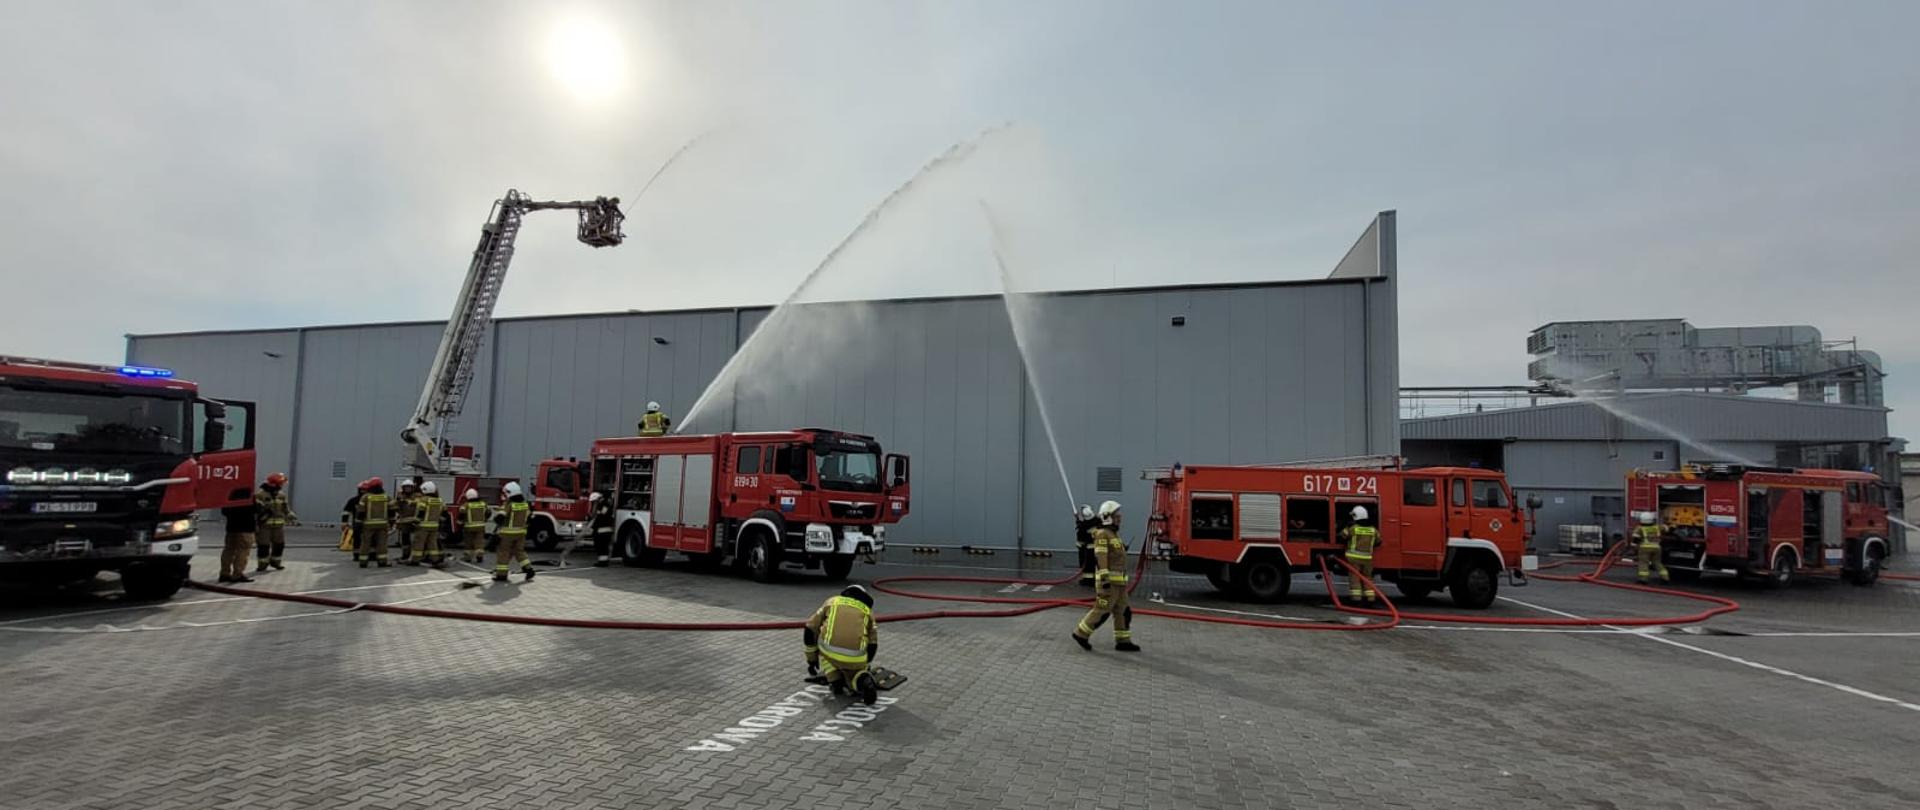 Ćwiczenia pożarnicze na terenie Zakładu Mleczarskiego w Winnicy